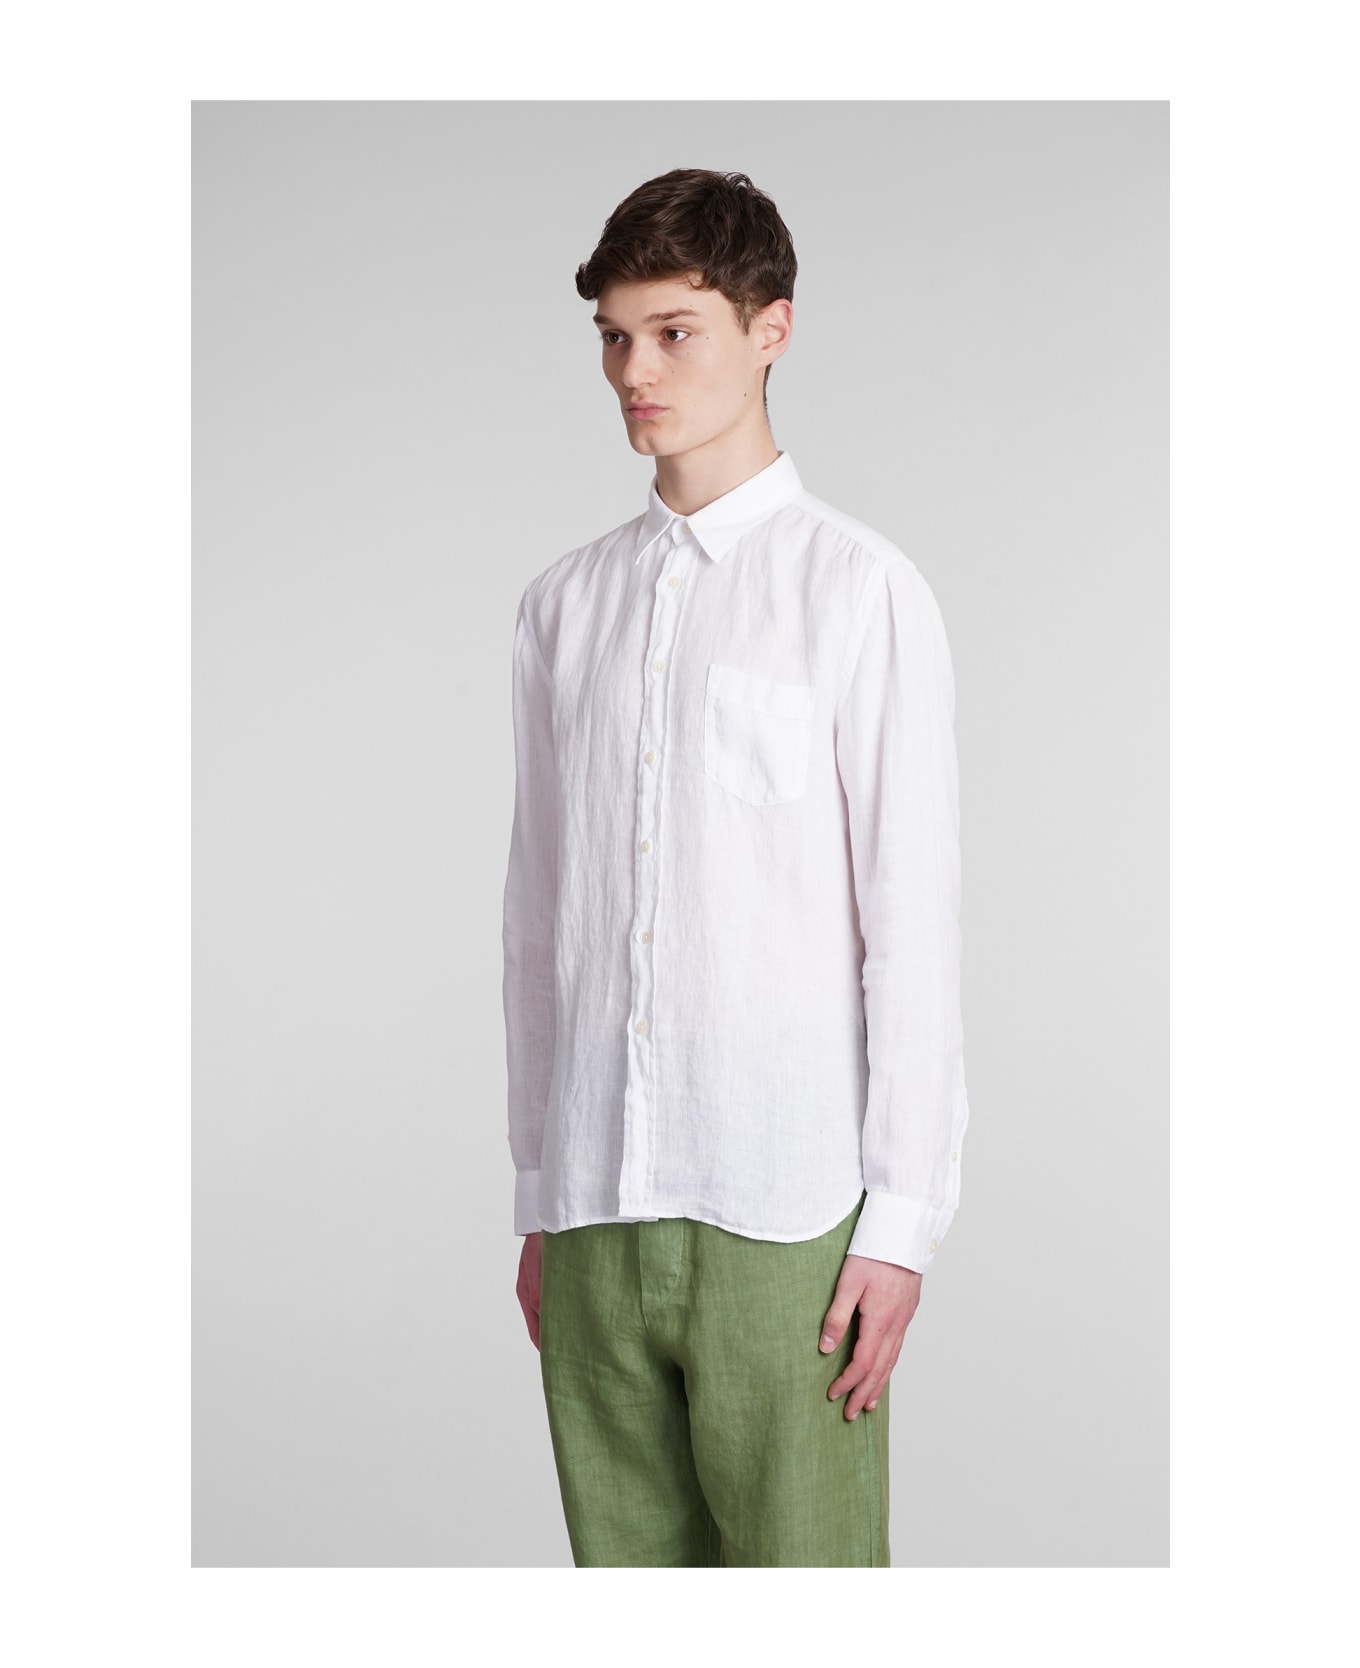 120% Lino Shirt In White Linen シャツ